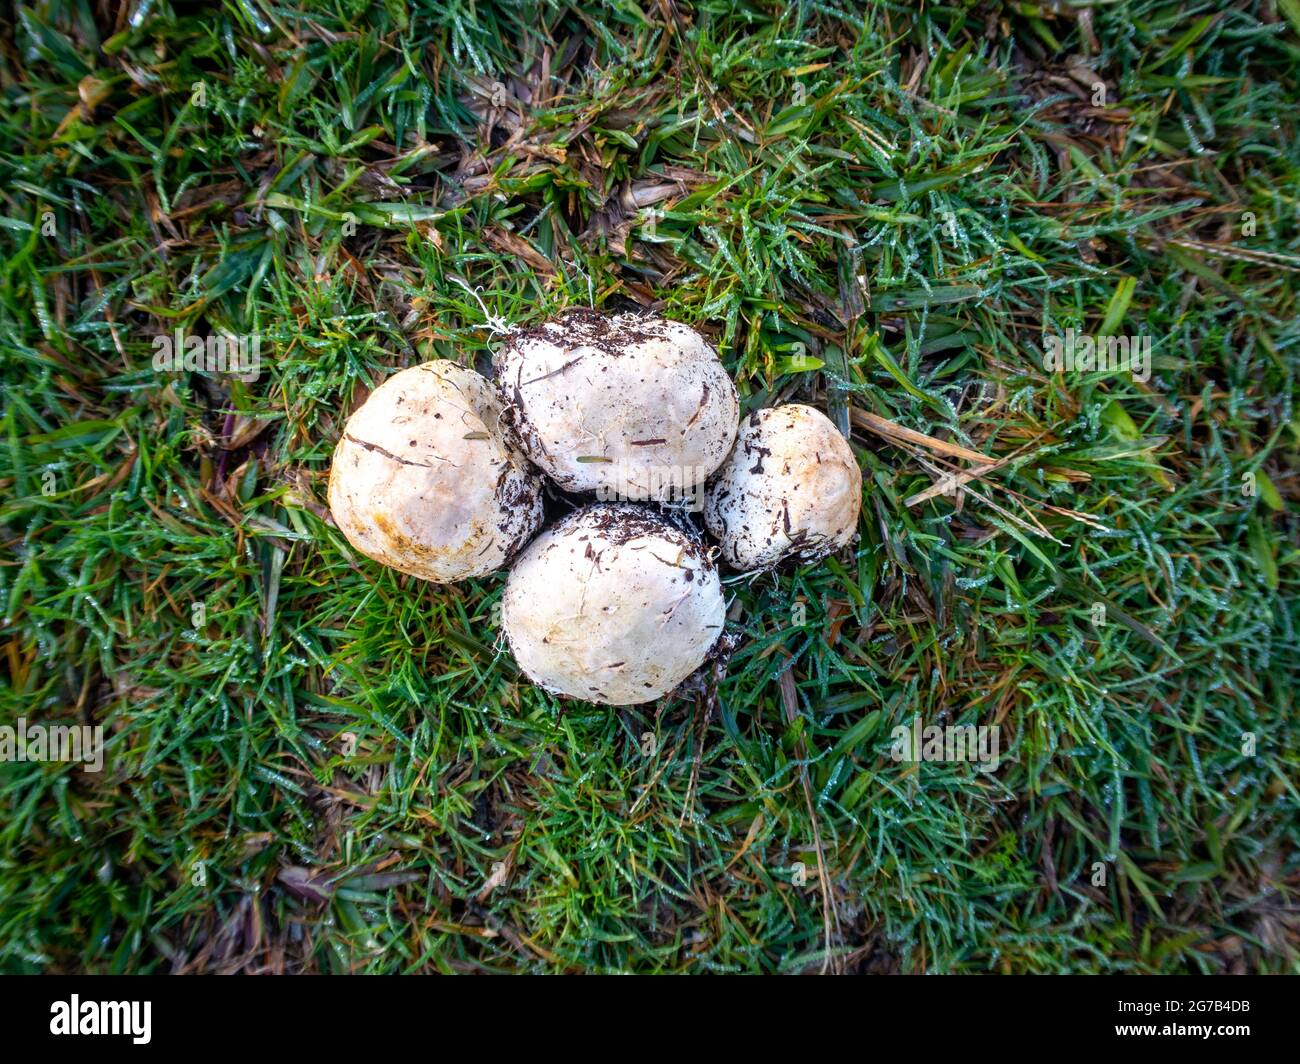 Ileodictyon cibarium, Korbpilz, die aussehen wie Puffbälle, aus dem Garten gepflückt und legte auf das Gras, um sie zu untersuchen, Neuseeland Stockfoto